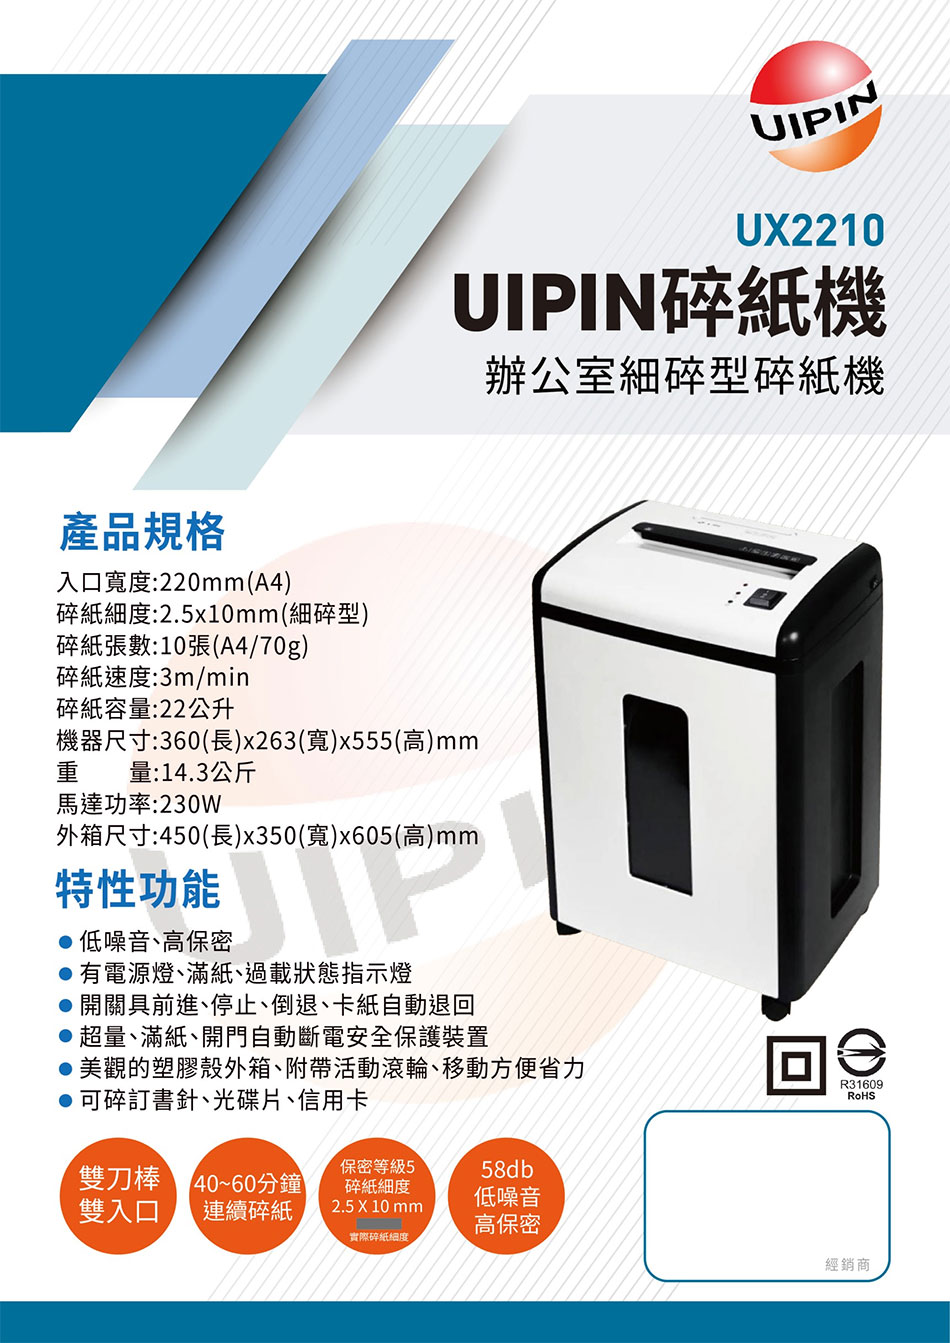 UIPIN UX2210 줽ǲӸH(A4)HȾ-Wwww.sunwe.com.tw